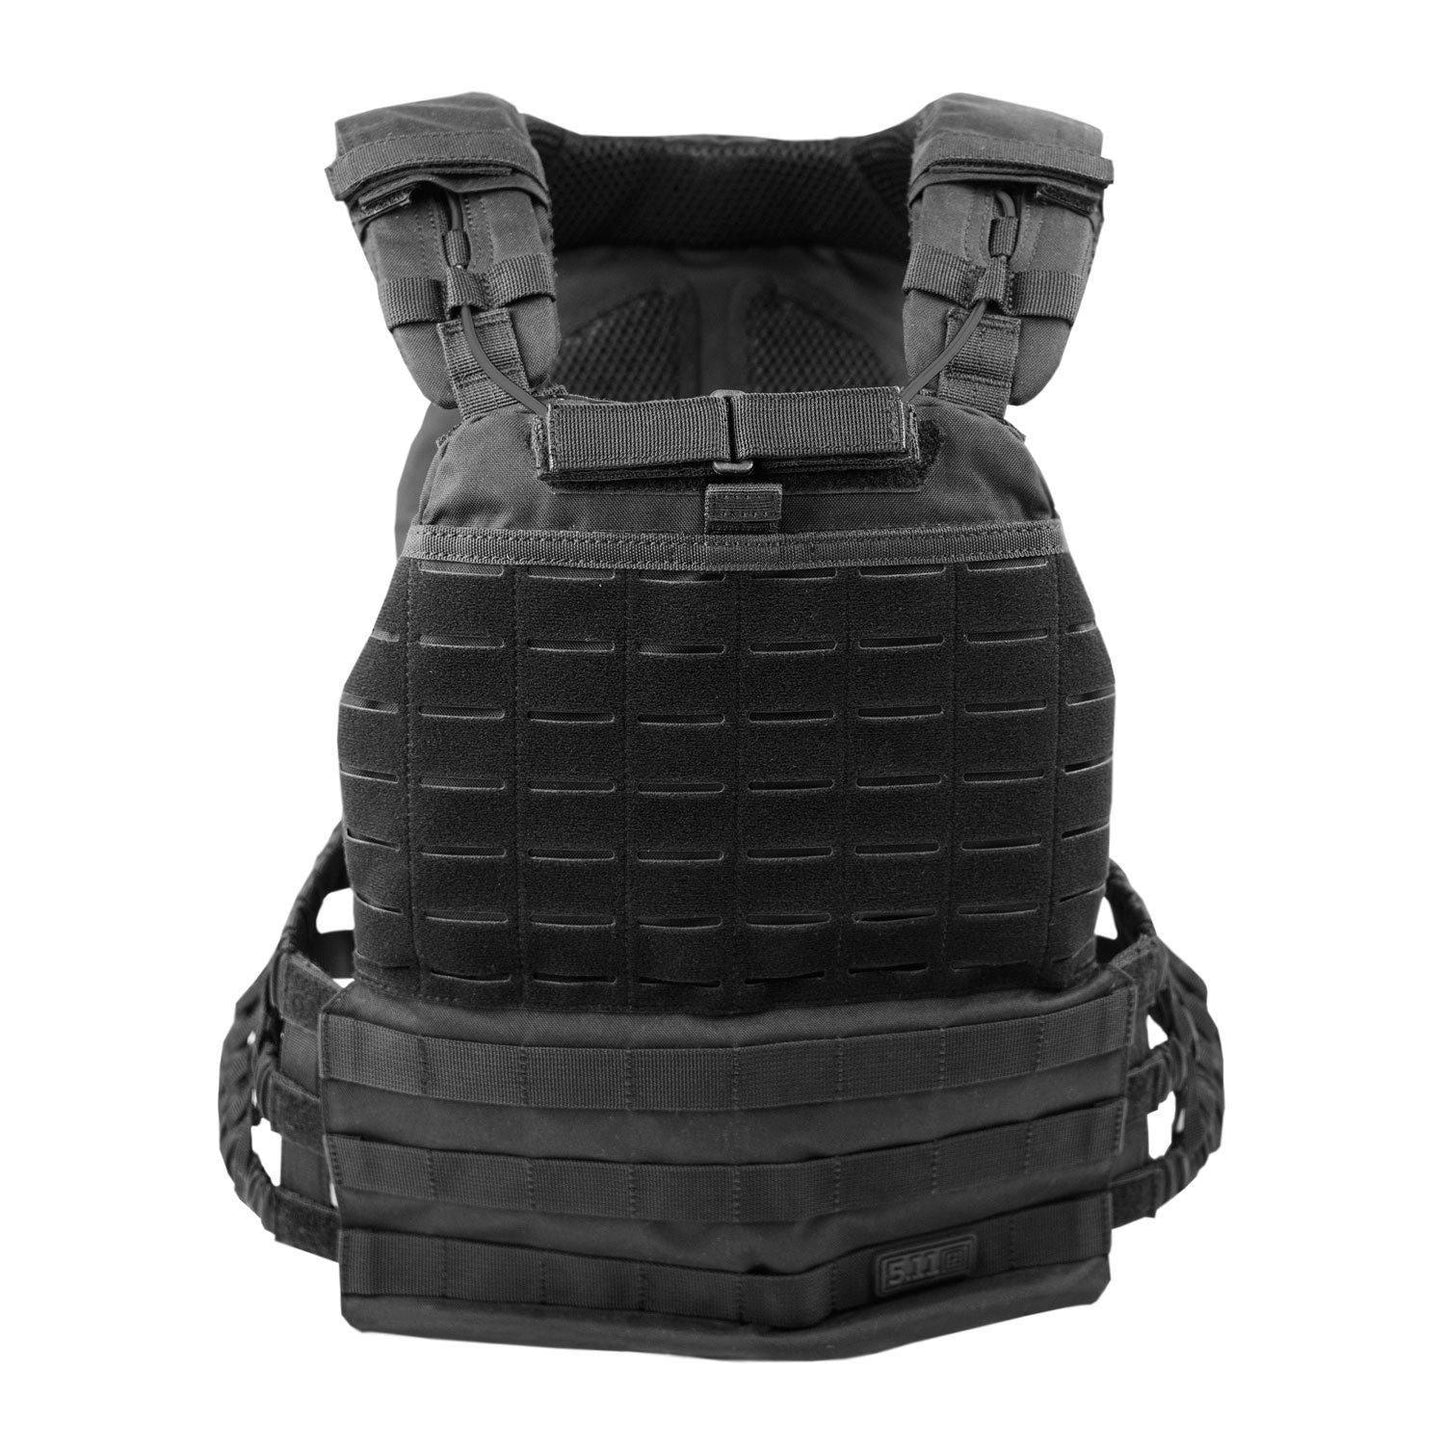 5.11 TacTec Plate Carrier (Skyddsvästar etc.) från 5.11 Tactical. Black | TacNGear - Utrustning för polis och militär och outdoor.